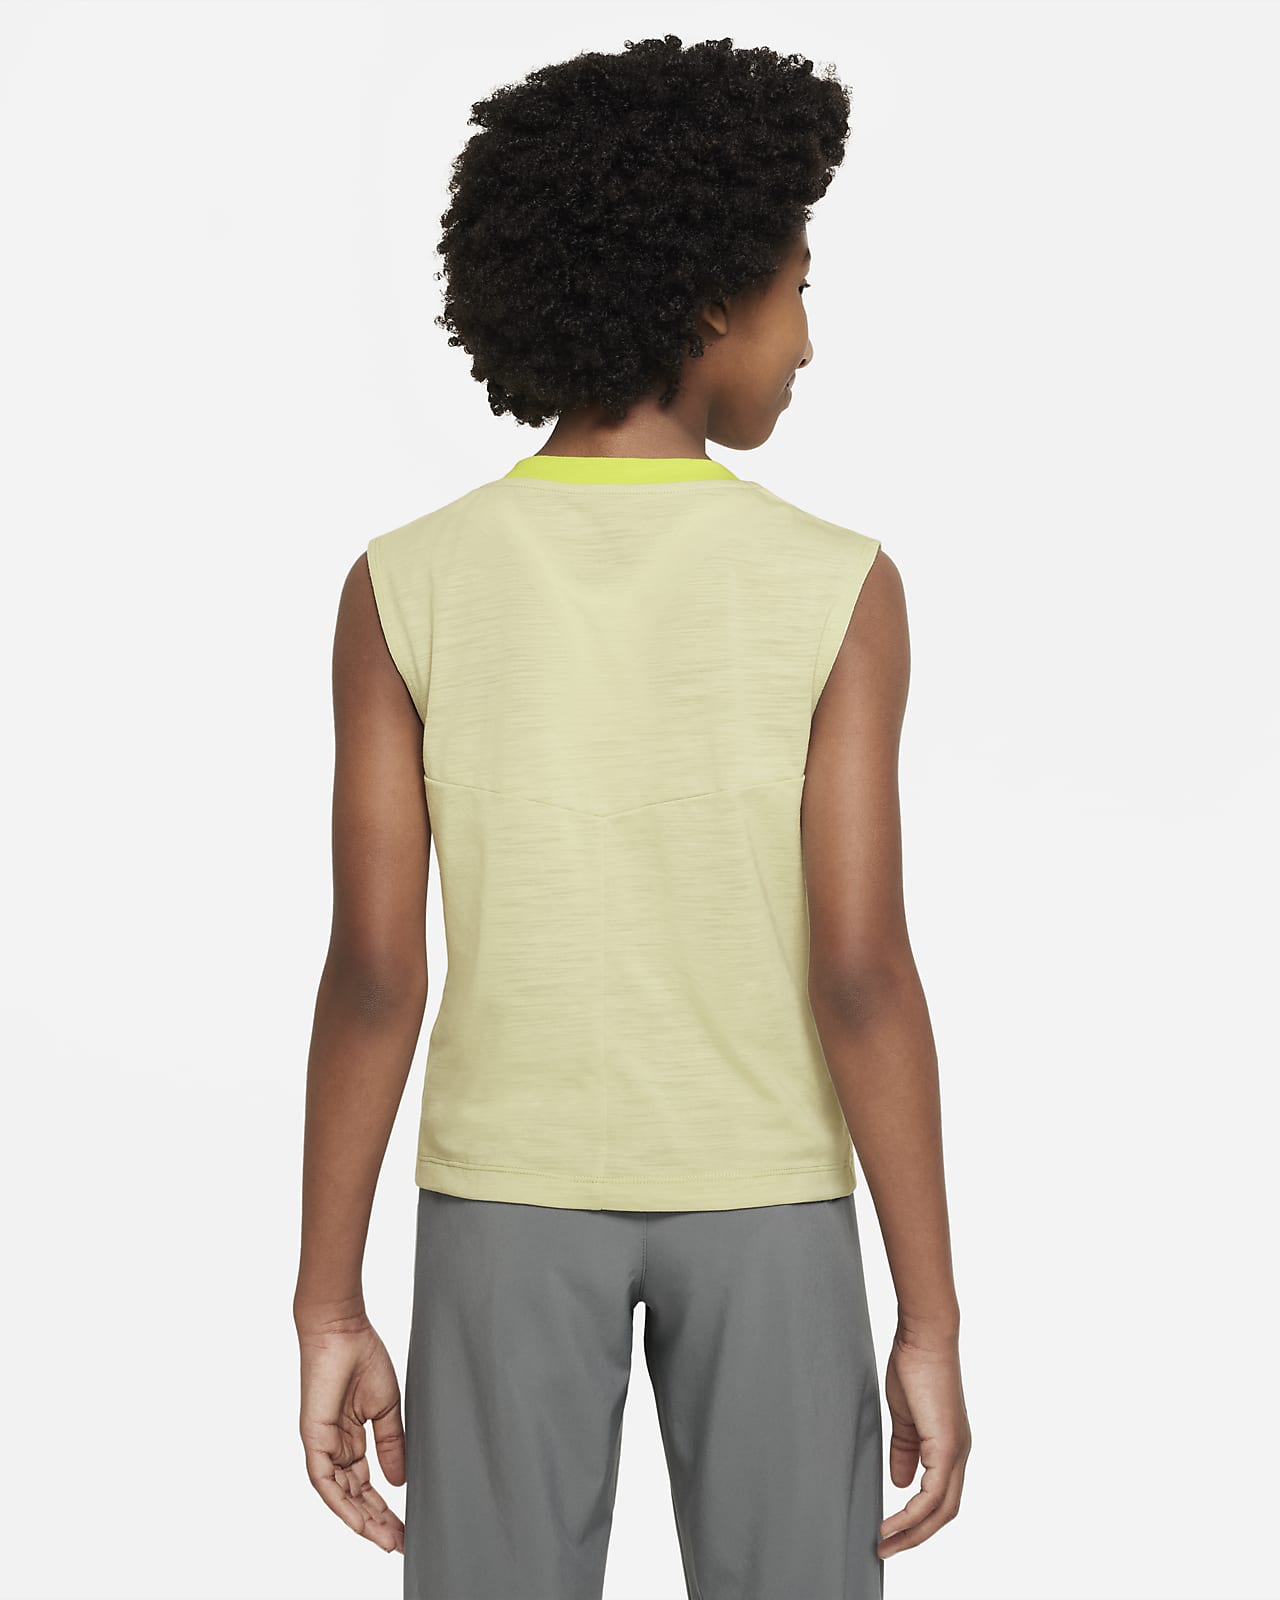 Women's T-shirt Nike yoga